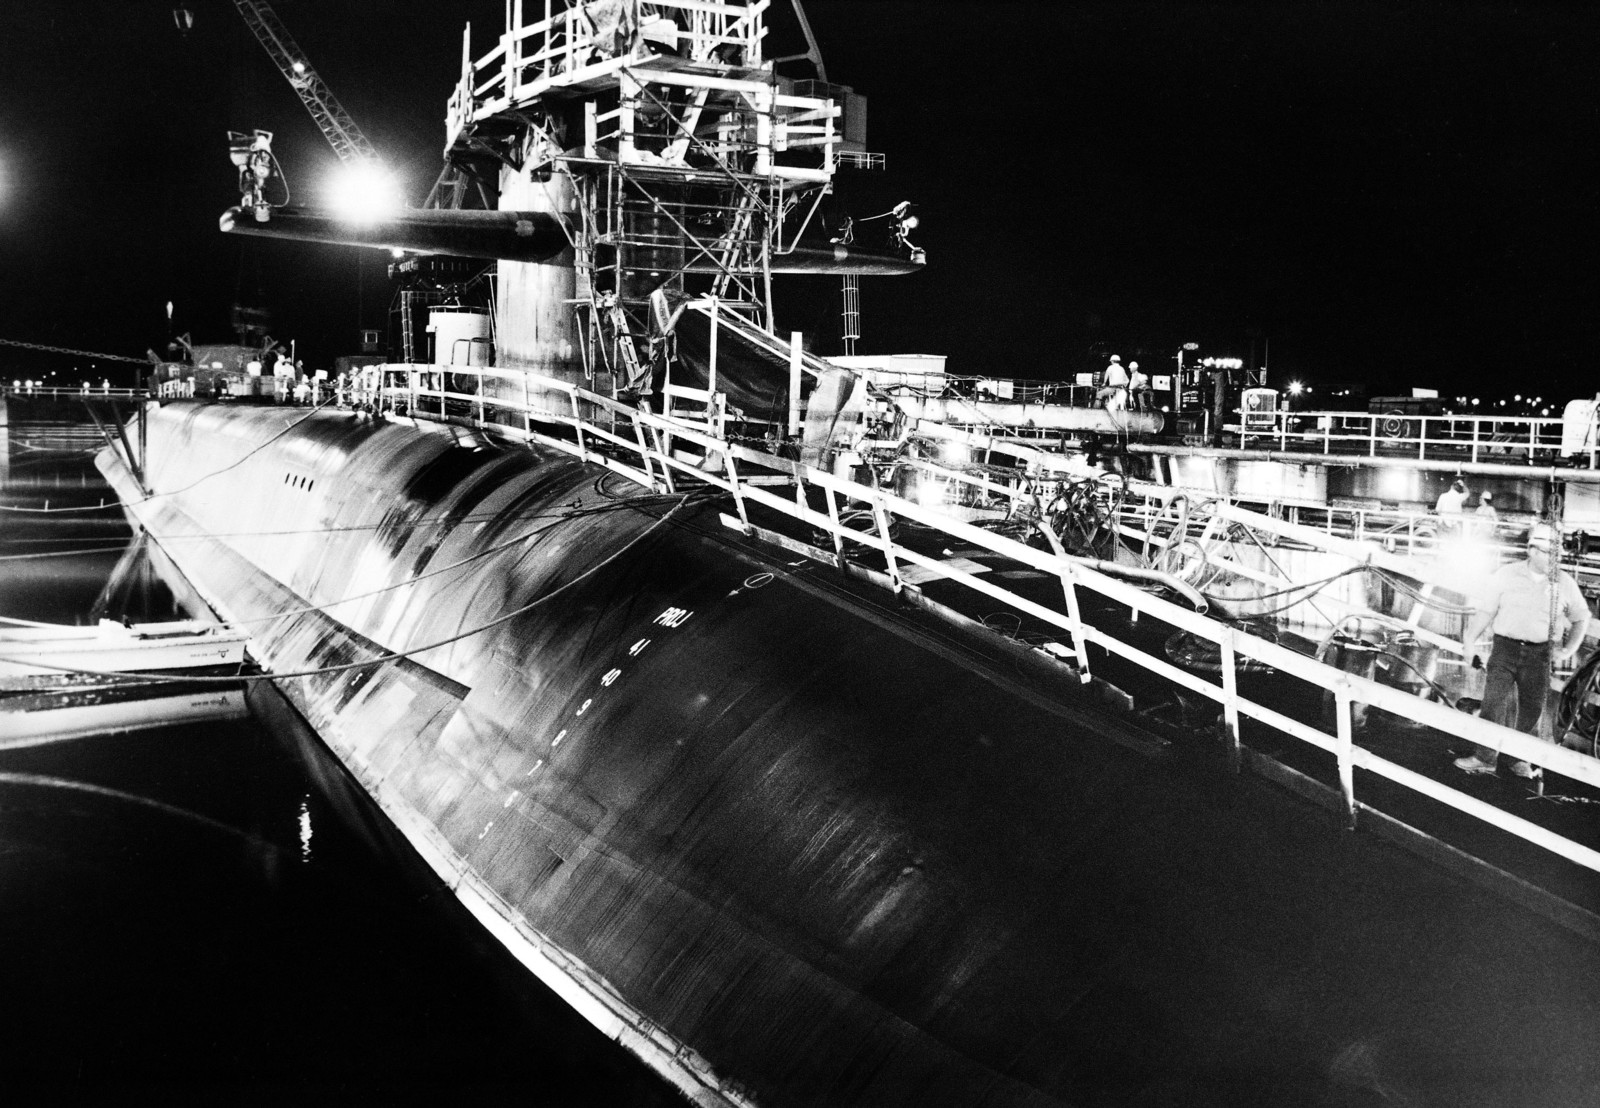 图鉴:俄亥俄级阿拉斯加号核潜艇 ssbn-732